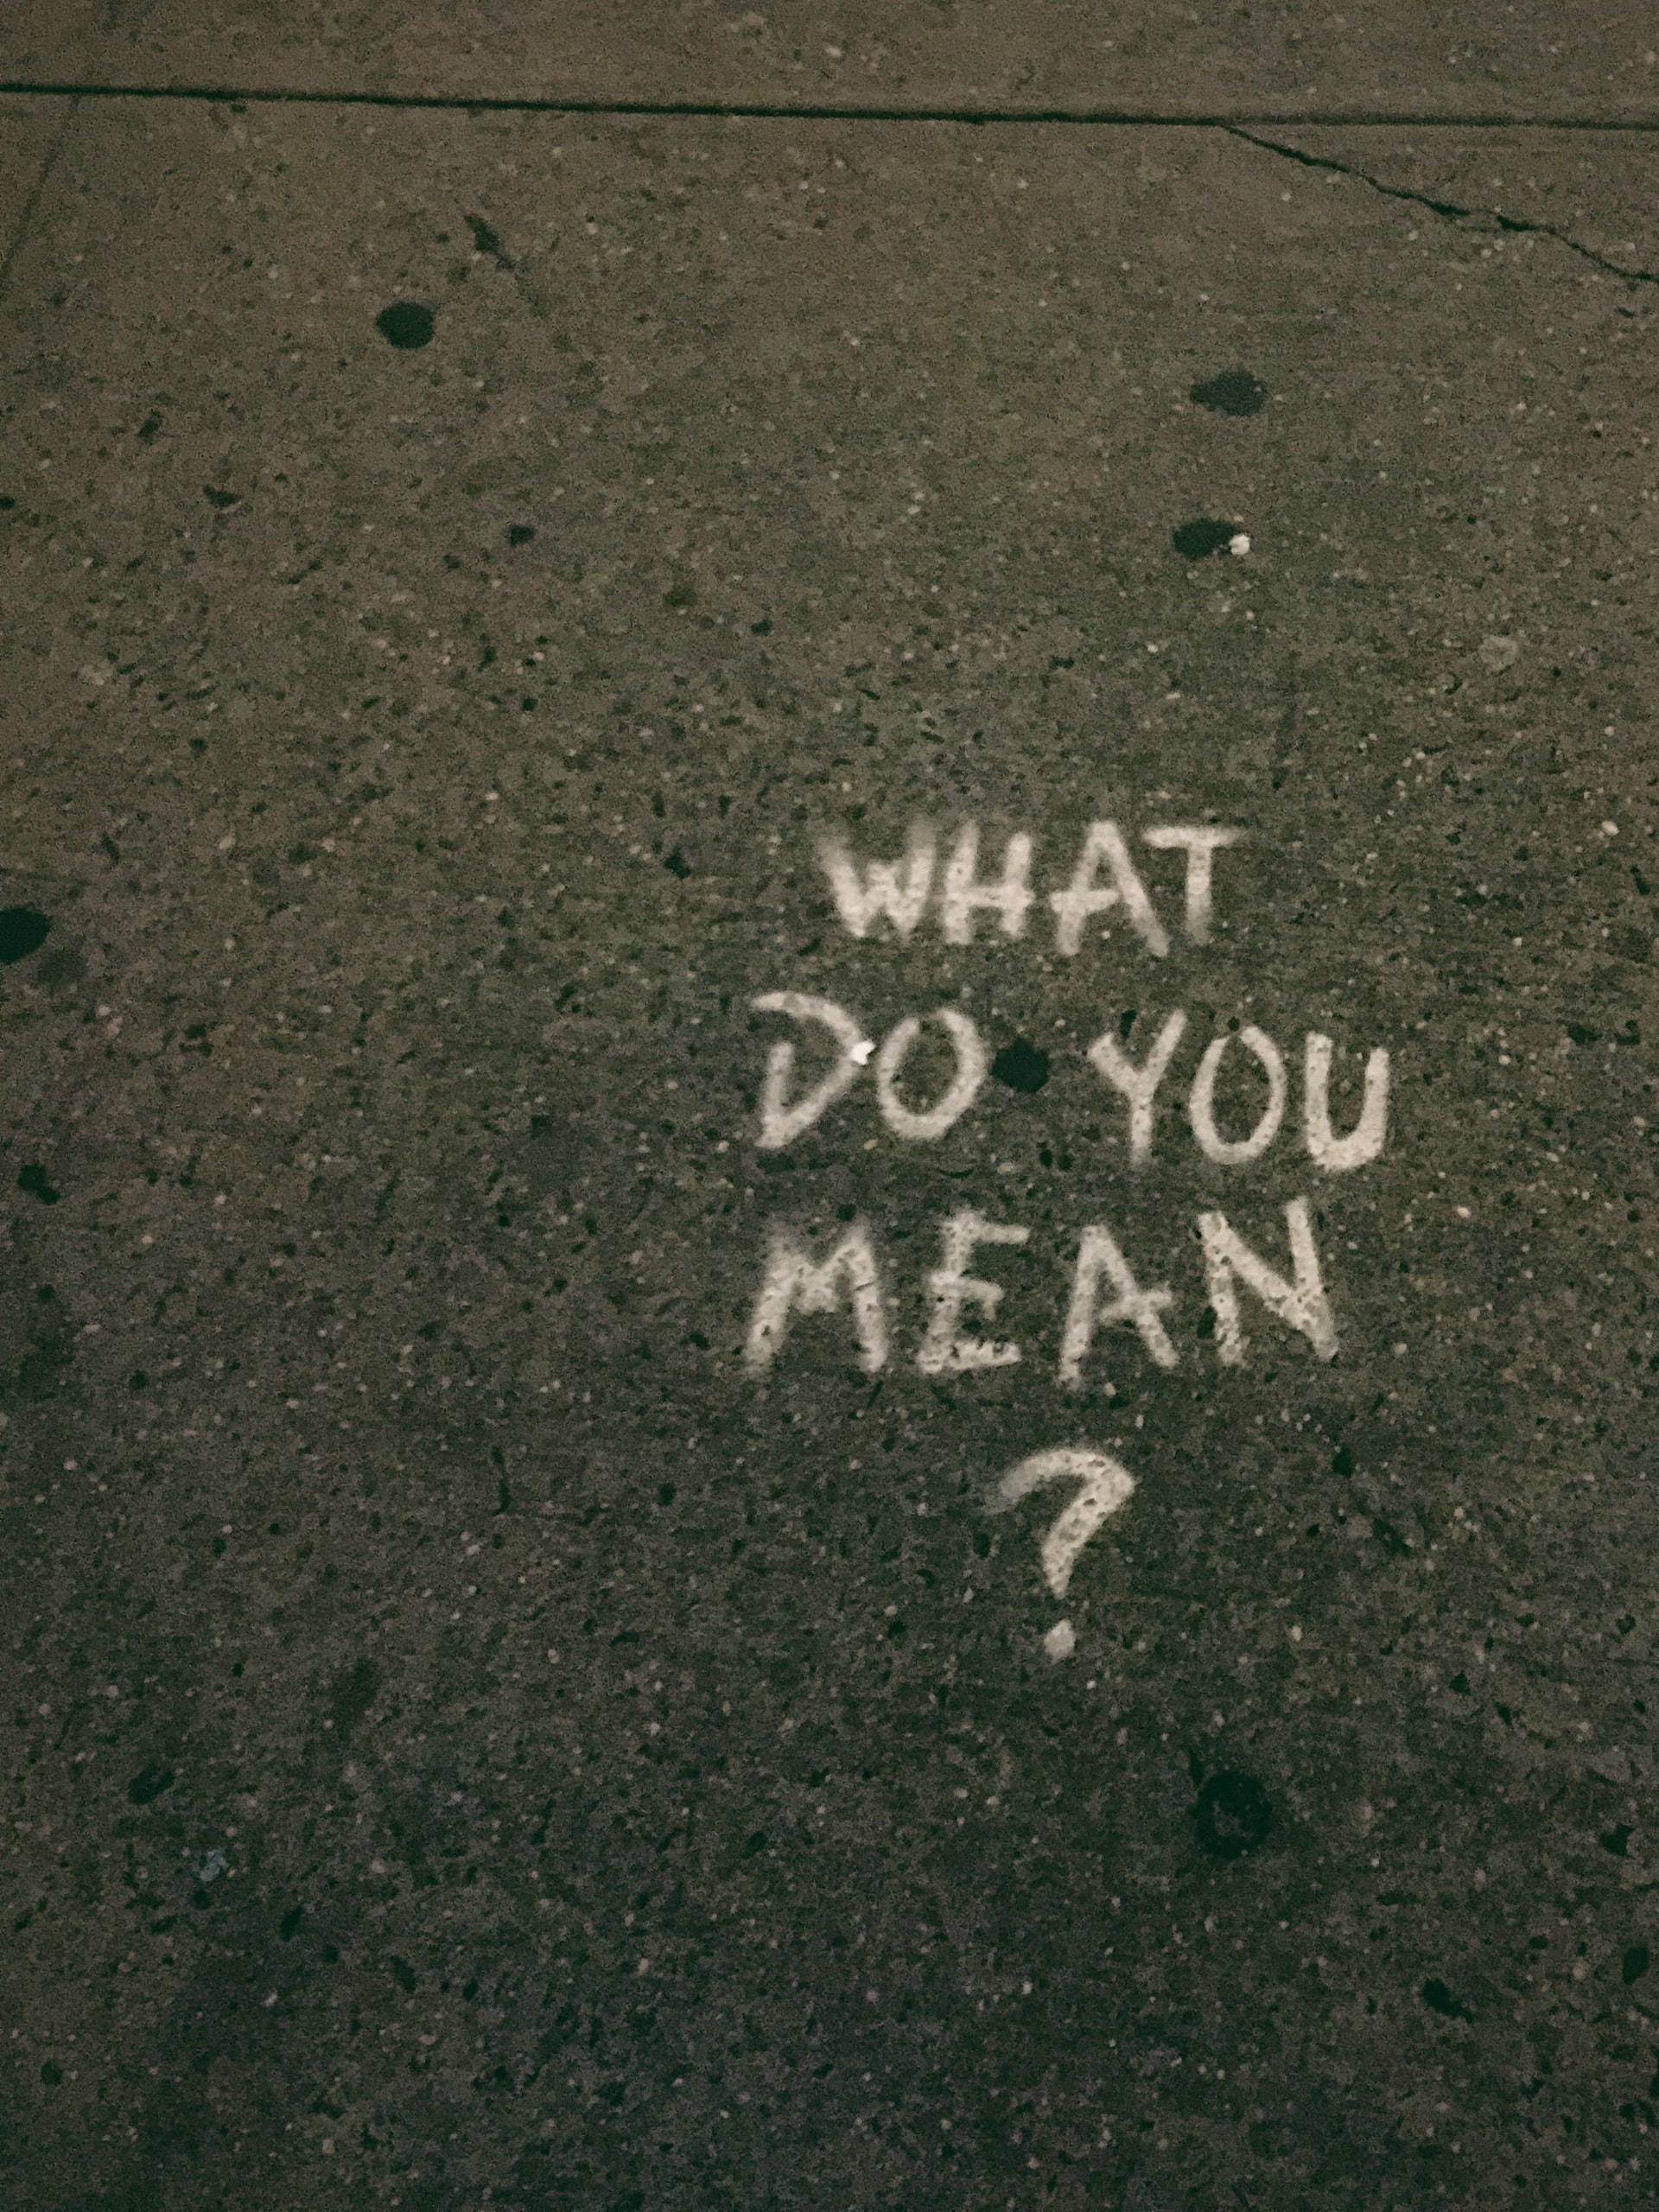 शब्द “आपका क्या मतलब है?” फुटपाथ पर चाक में लिखा है।